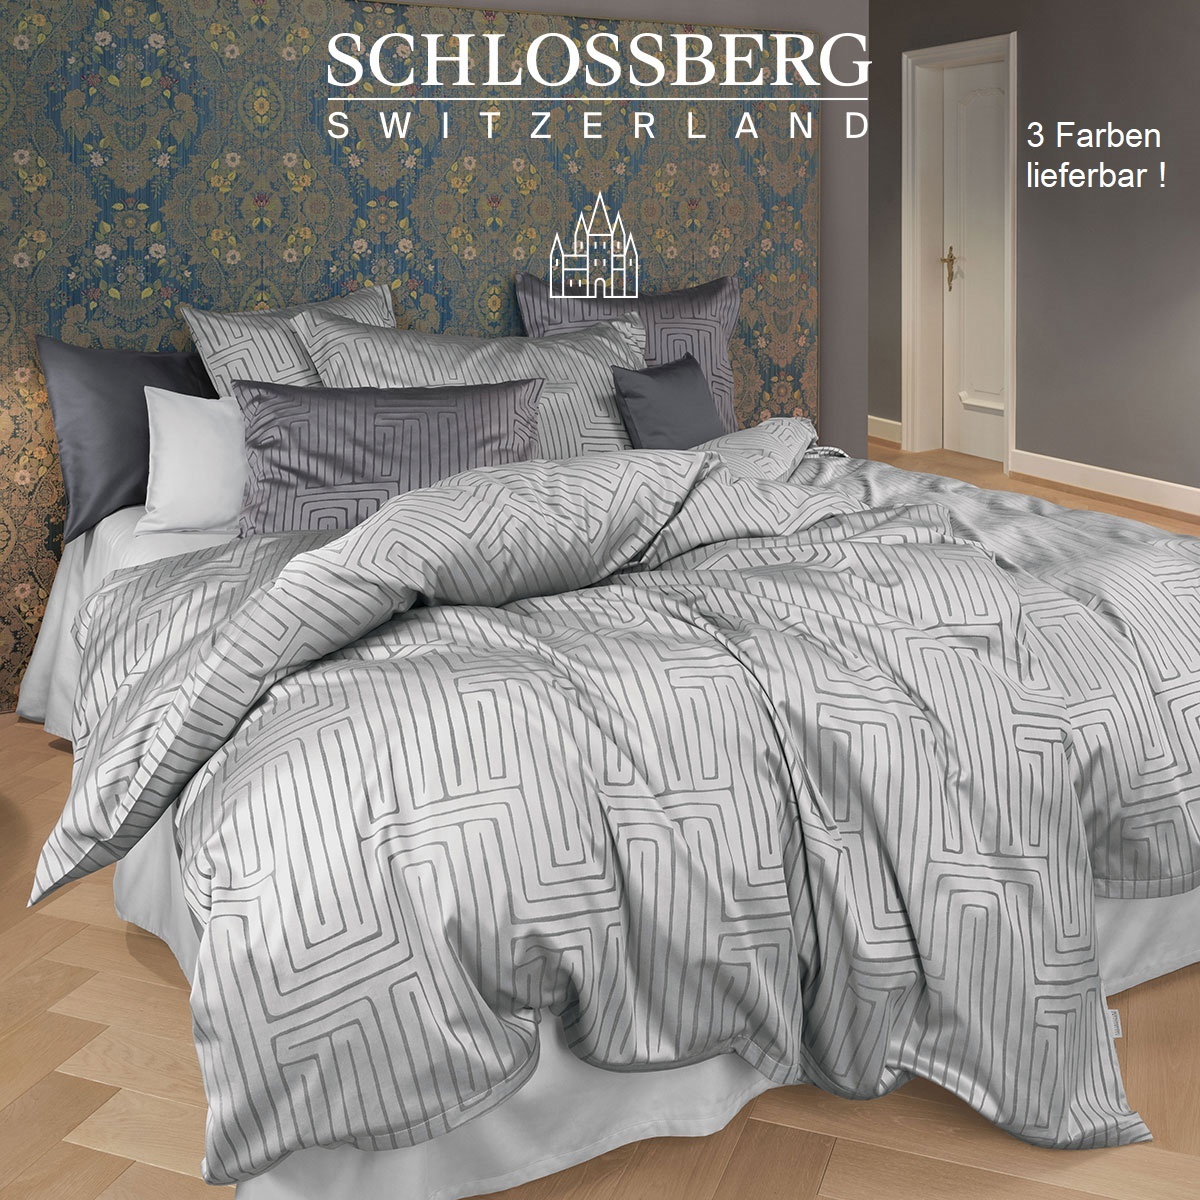 Schlossberg     Schlossberg-SILAS -Jacquard de Luxe - 3 Farben